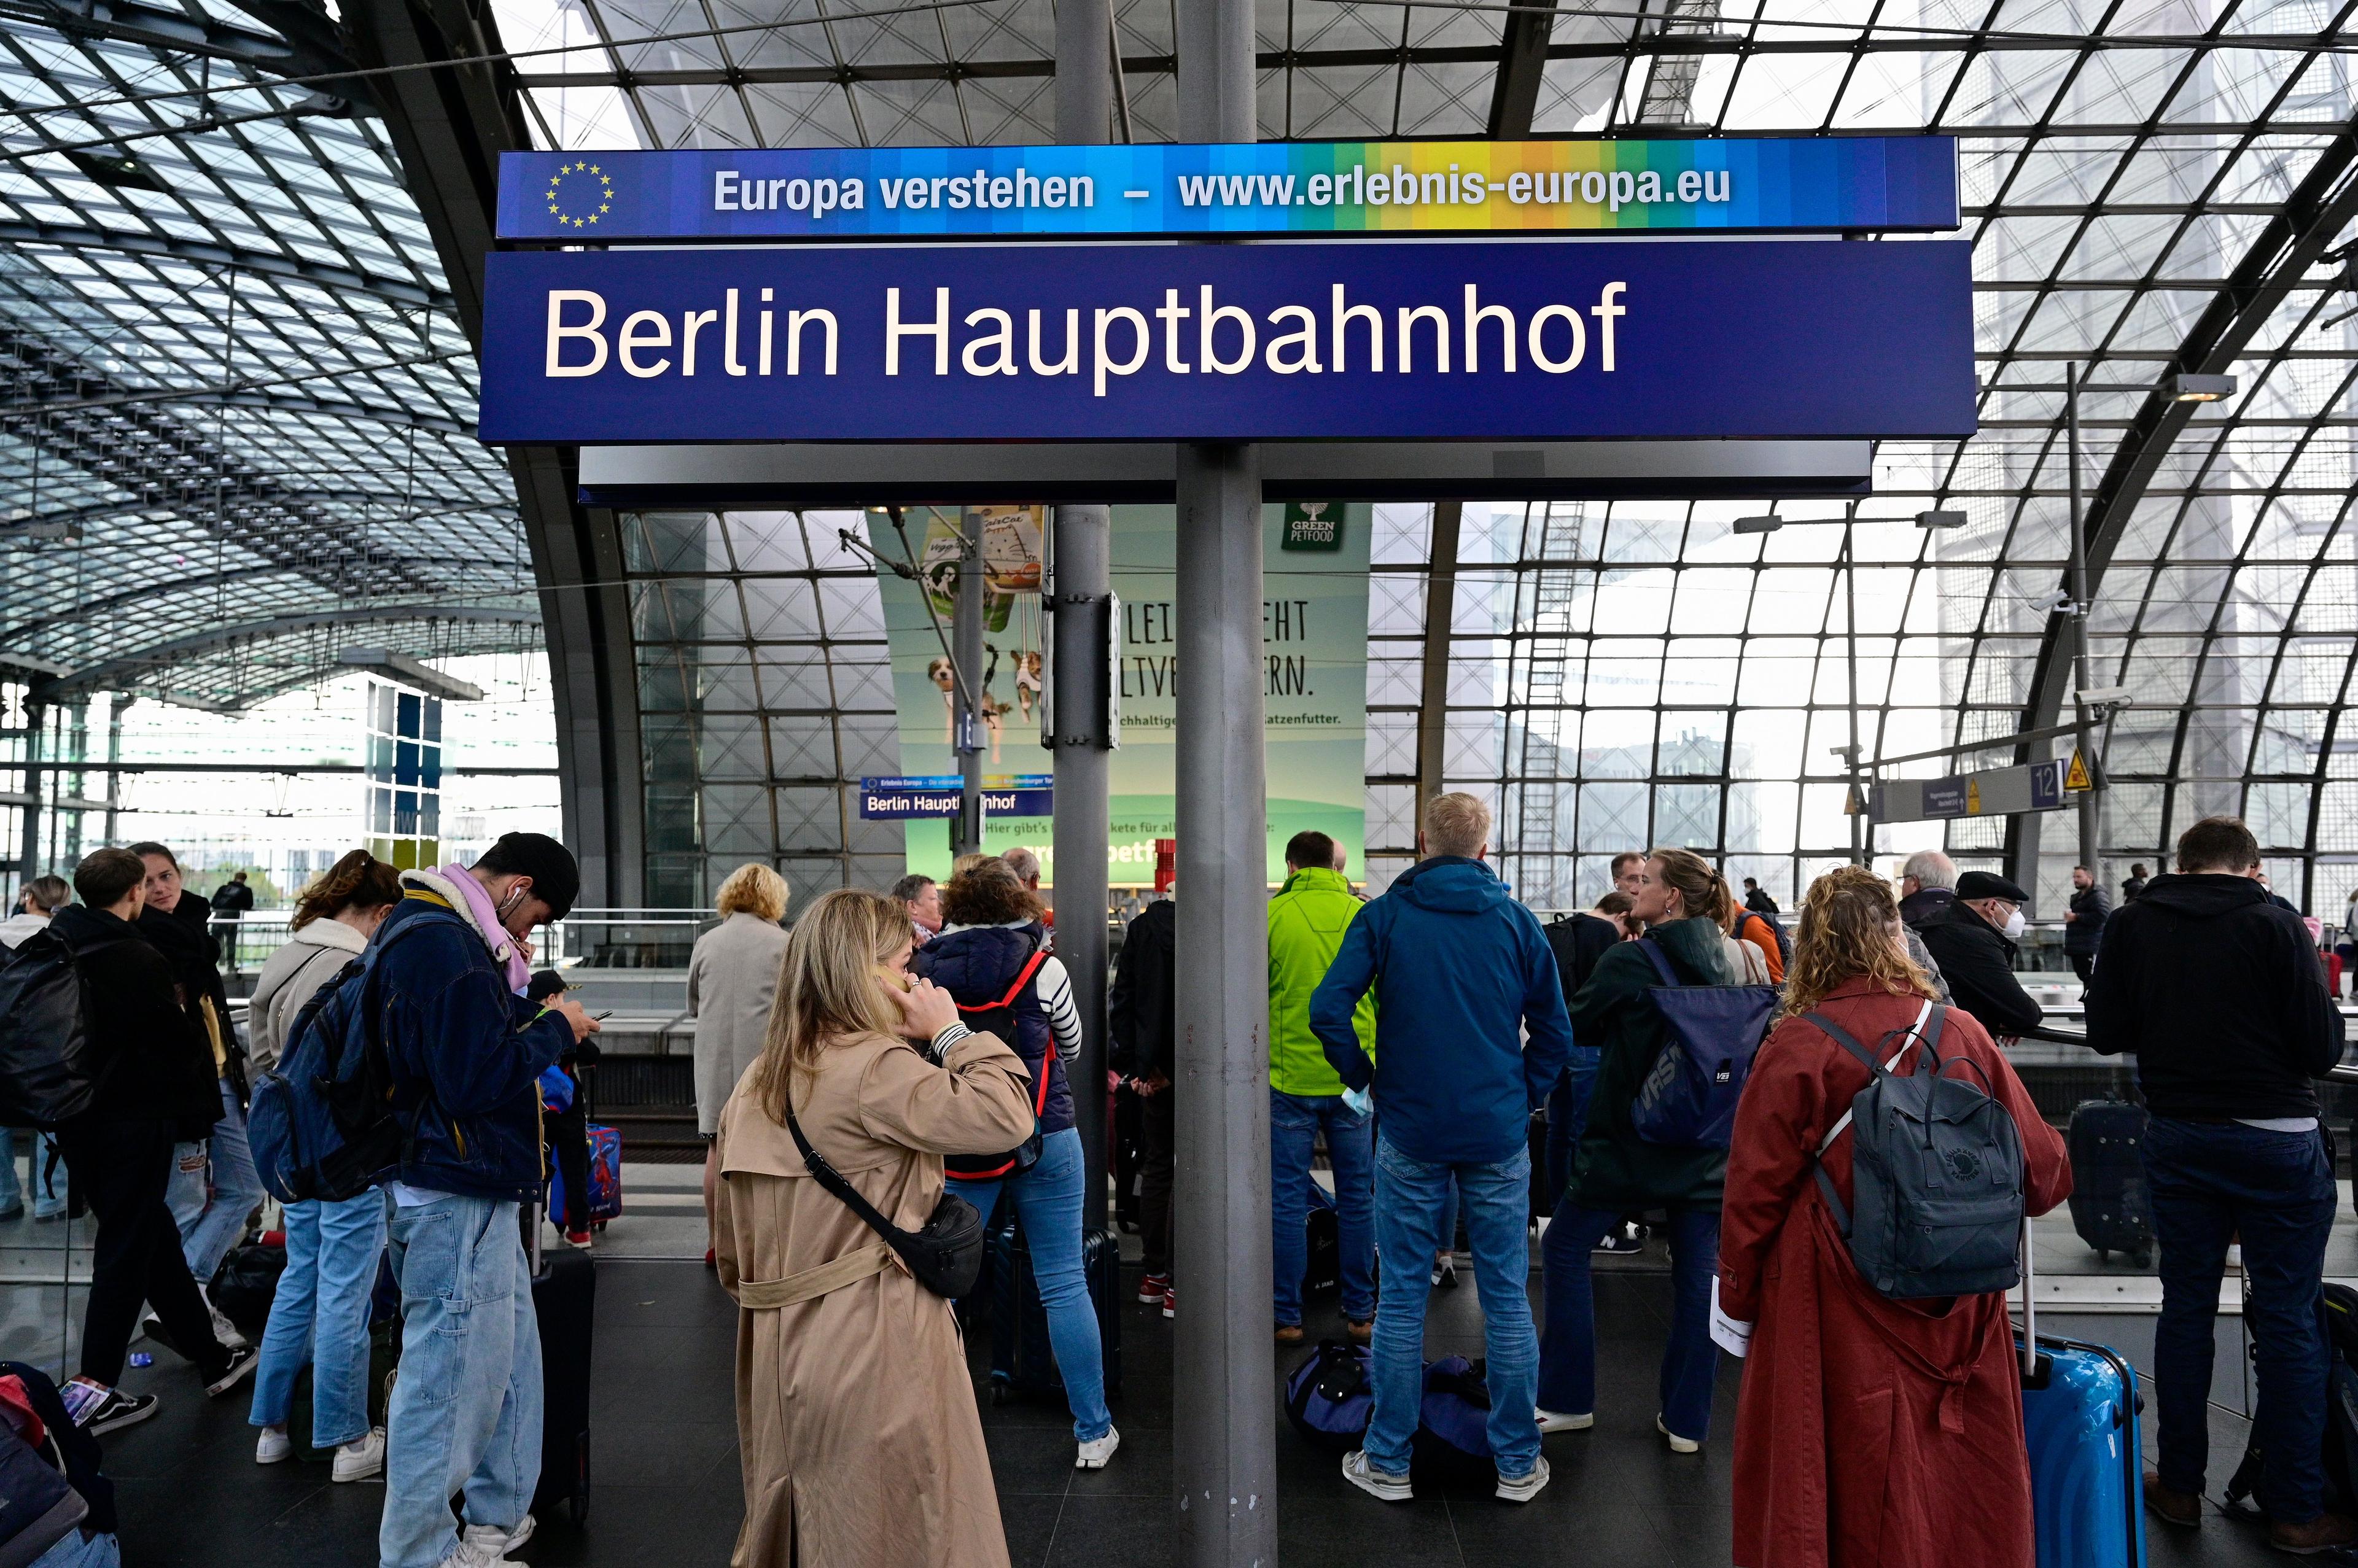 Peron kolejowy w z tlumem ludzi i niemieckim napisem "Berlin Dworzec Góówny" (Berlin Hauptbanhof)